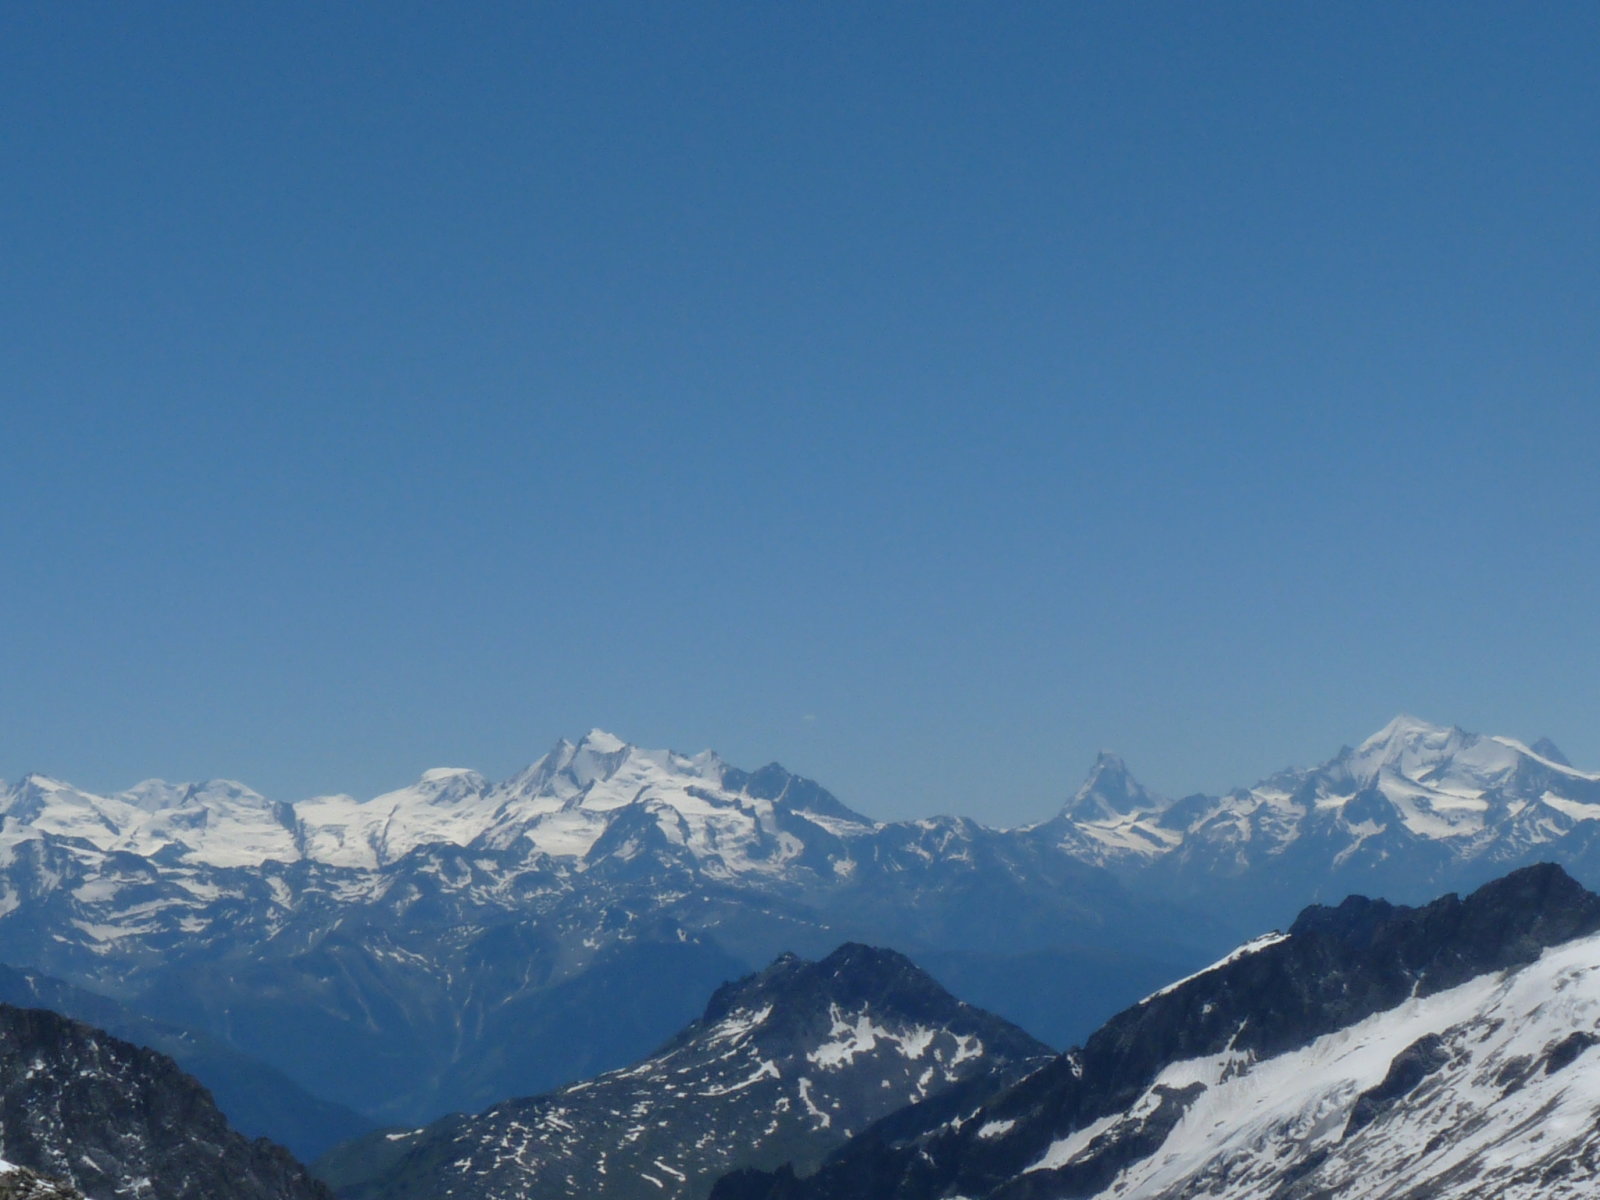 középen Európa legtöbbet fényképezett hegye (Matterhorn)